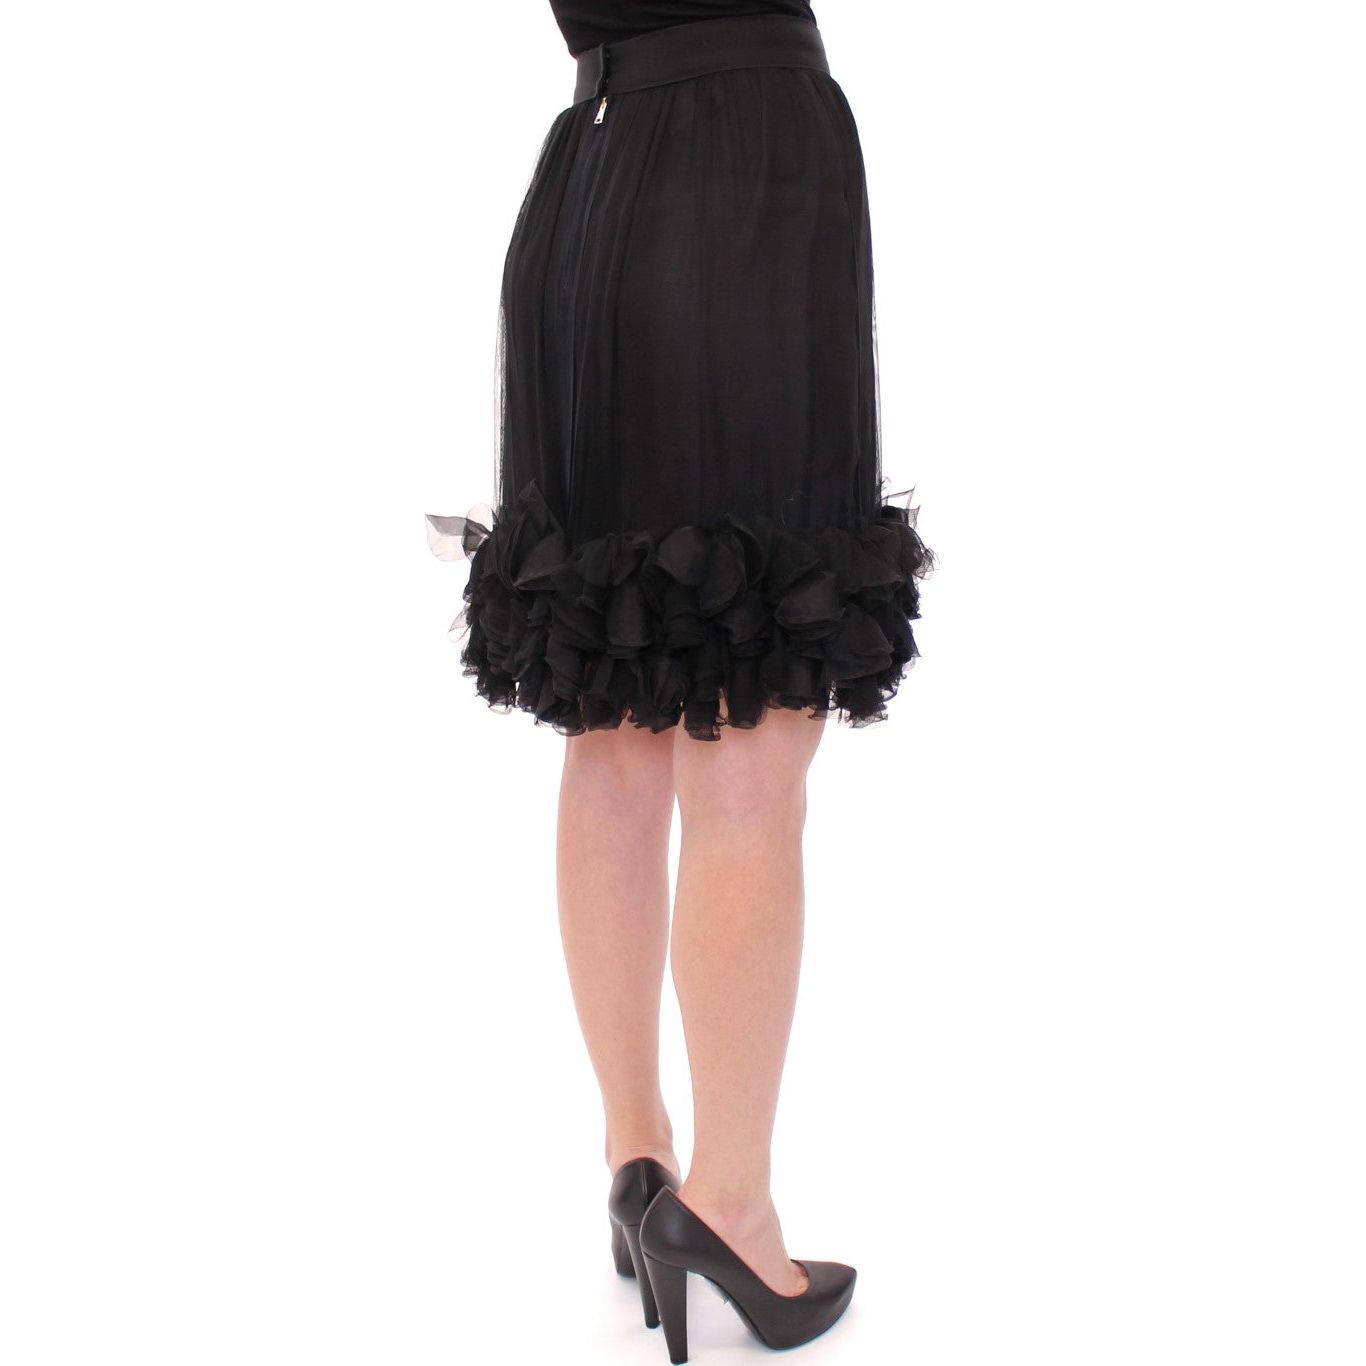 Dolce & Gabbana Elegant Silk Black Skirt for Evenings black-silk-transparent-above-knees-skirt